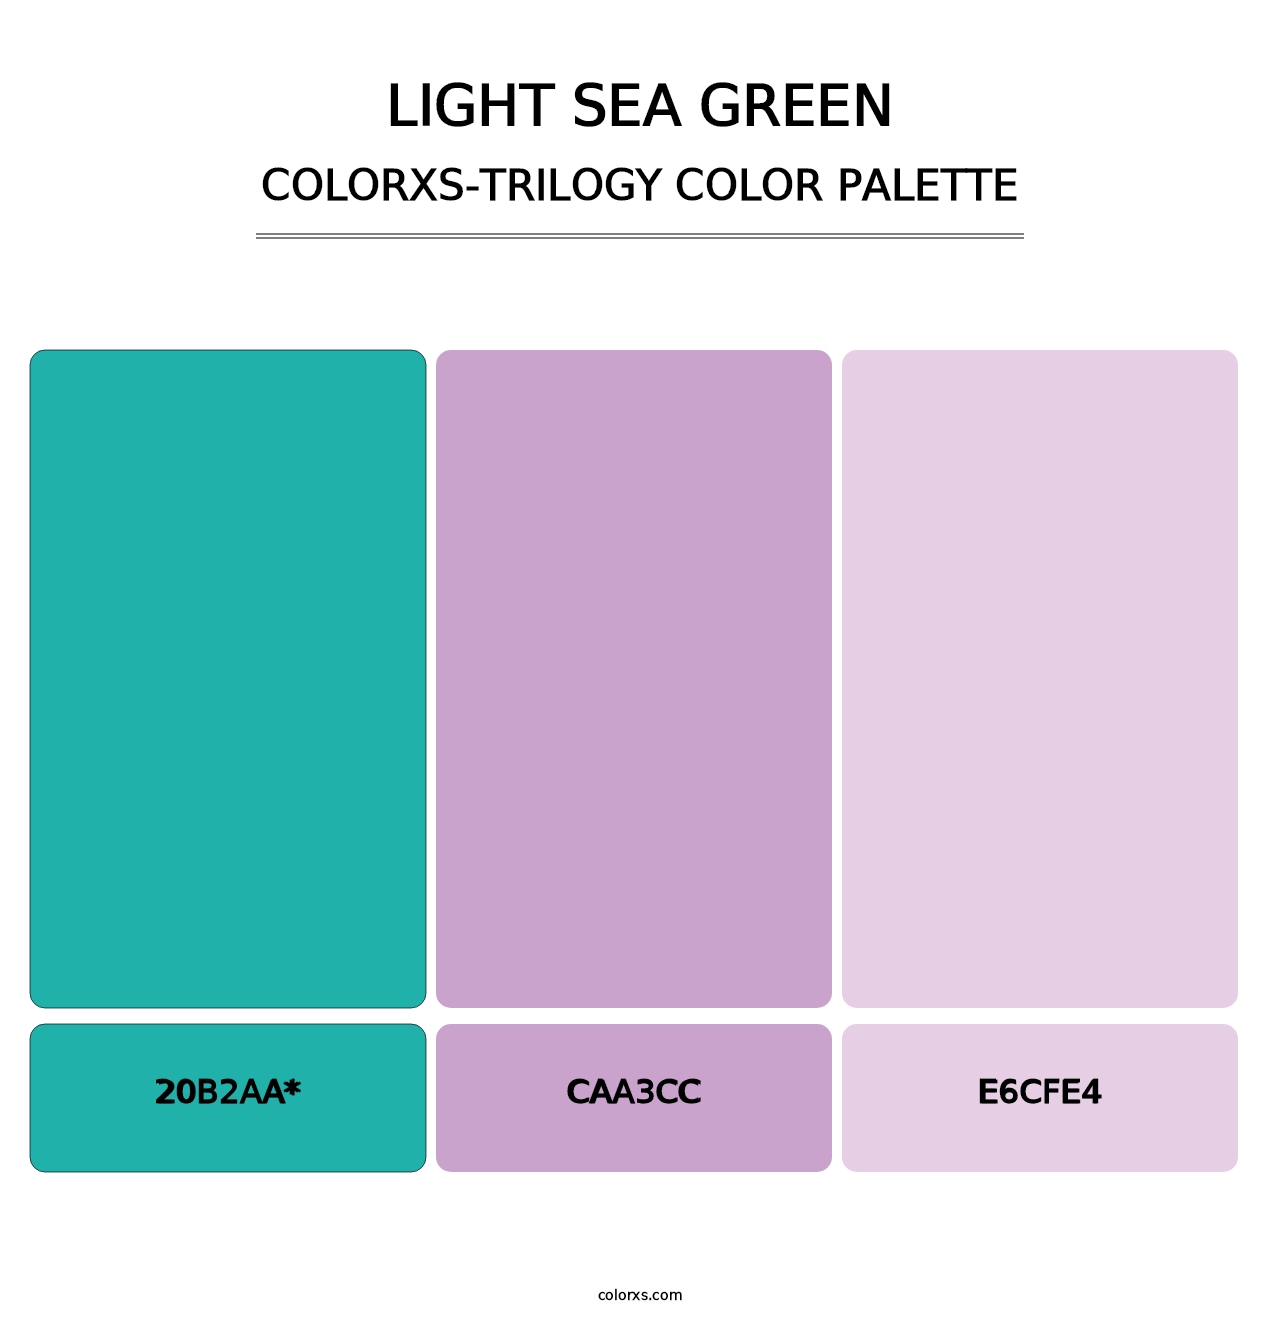 Light Sea Green - Colorxs Trilogy Palette